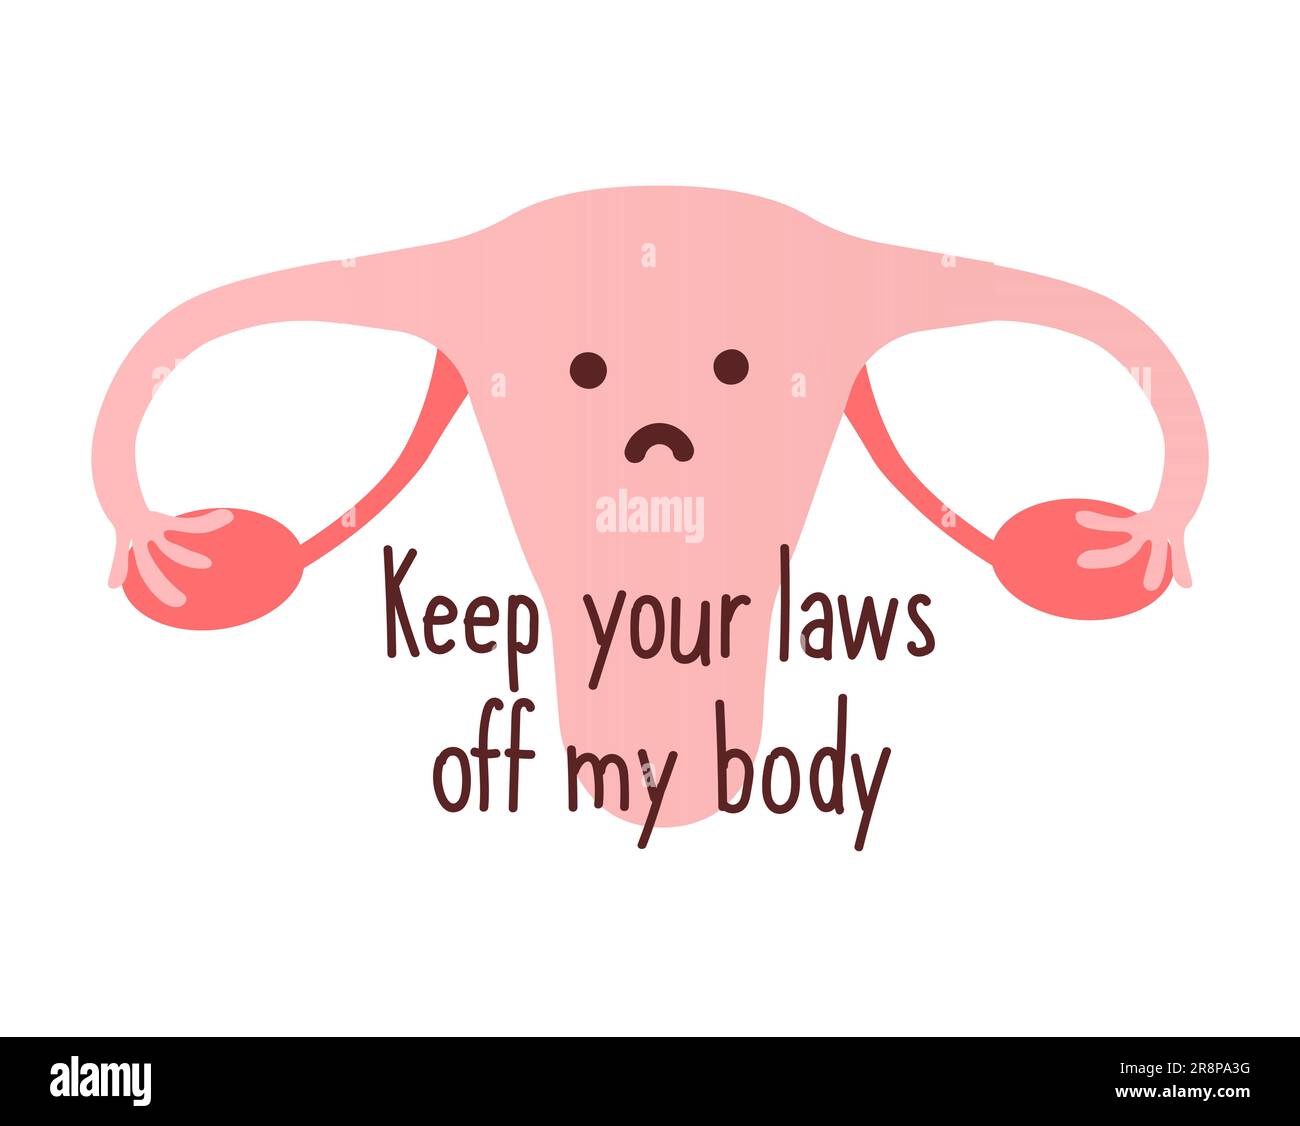 Halte deine Gesetze von meinem Körper fern. Frauen, die nach dem Abtreibungsverbot weiterhin Zugang zu Abtreibungen verlangen, Roe gegen Wade. Frauenrecht auf Abtreibung. Stock Vektor